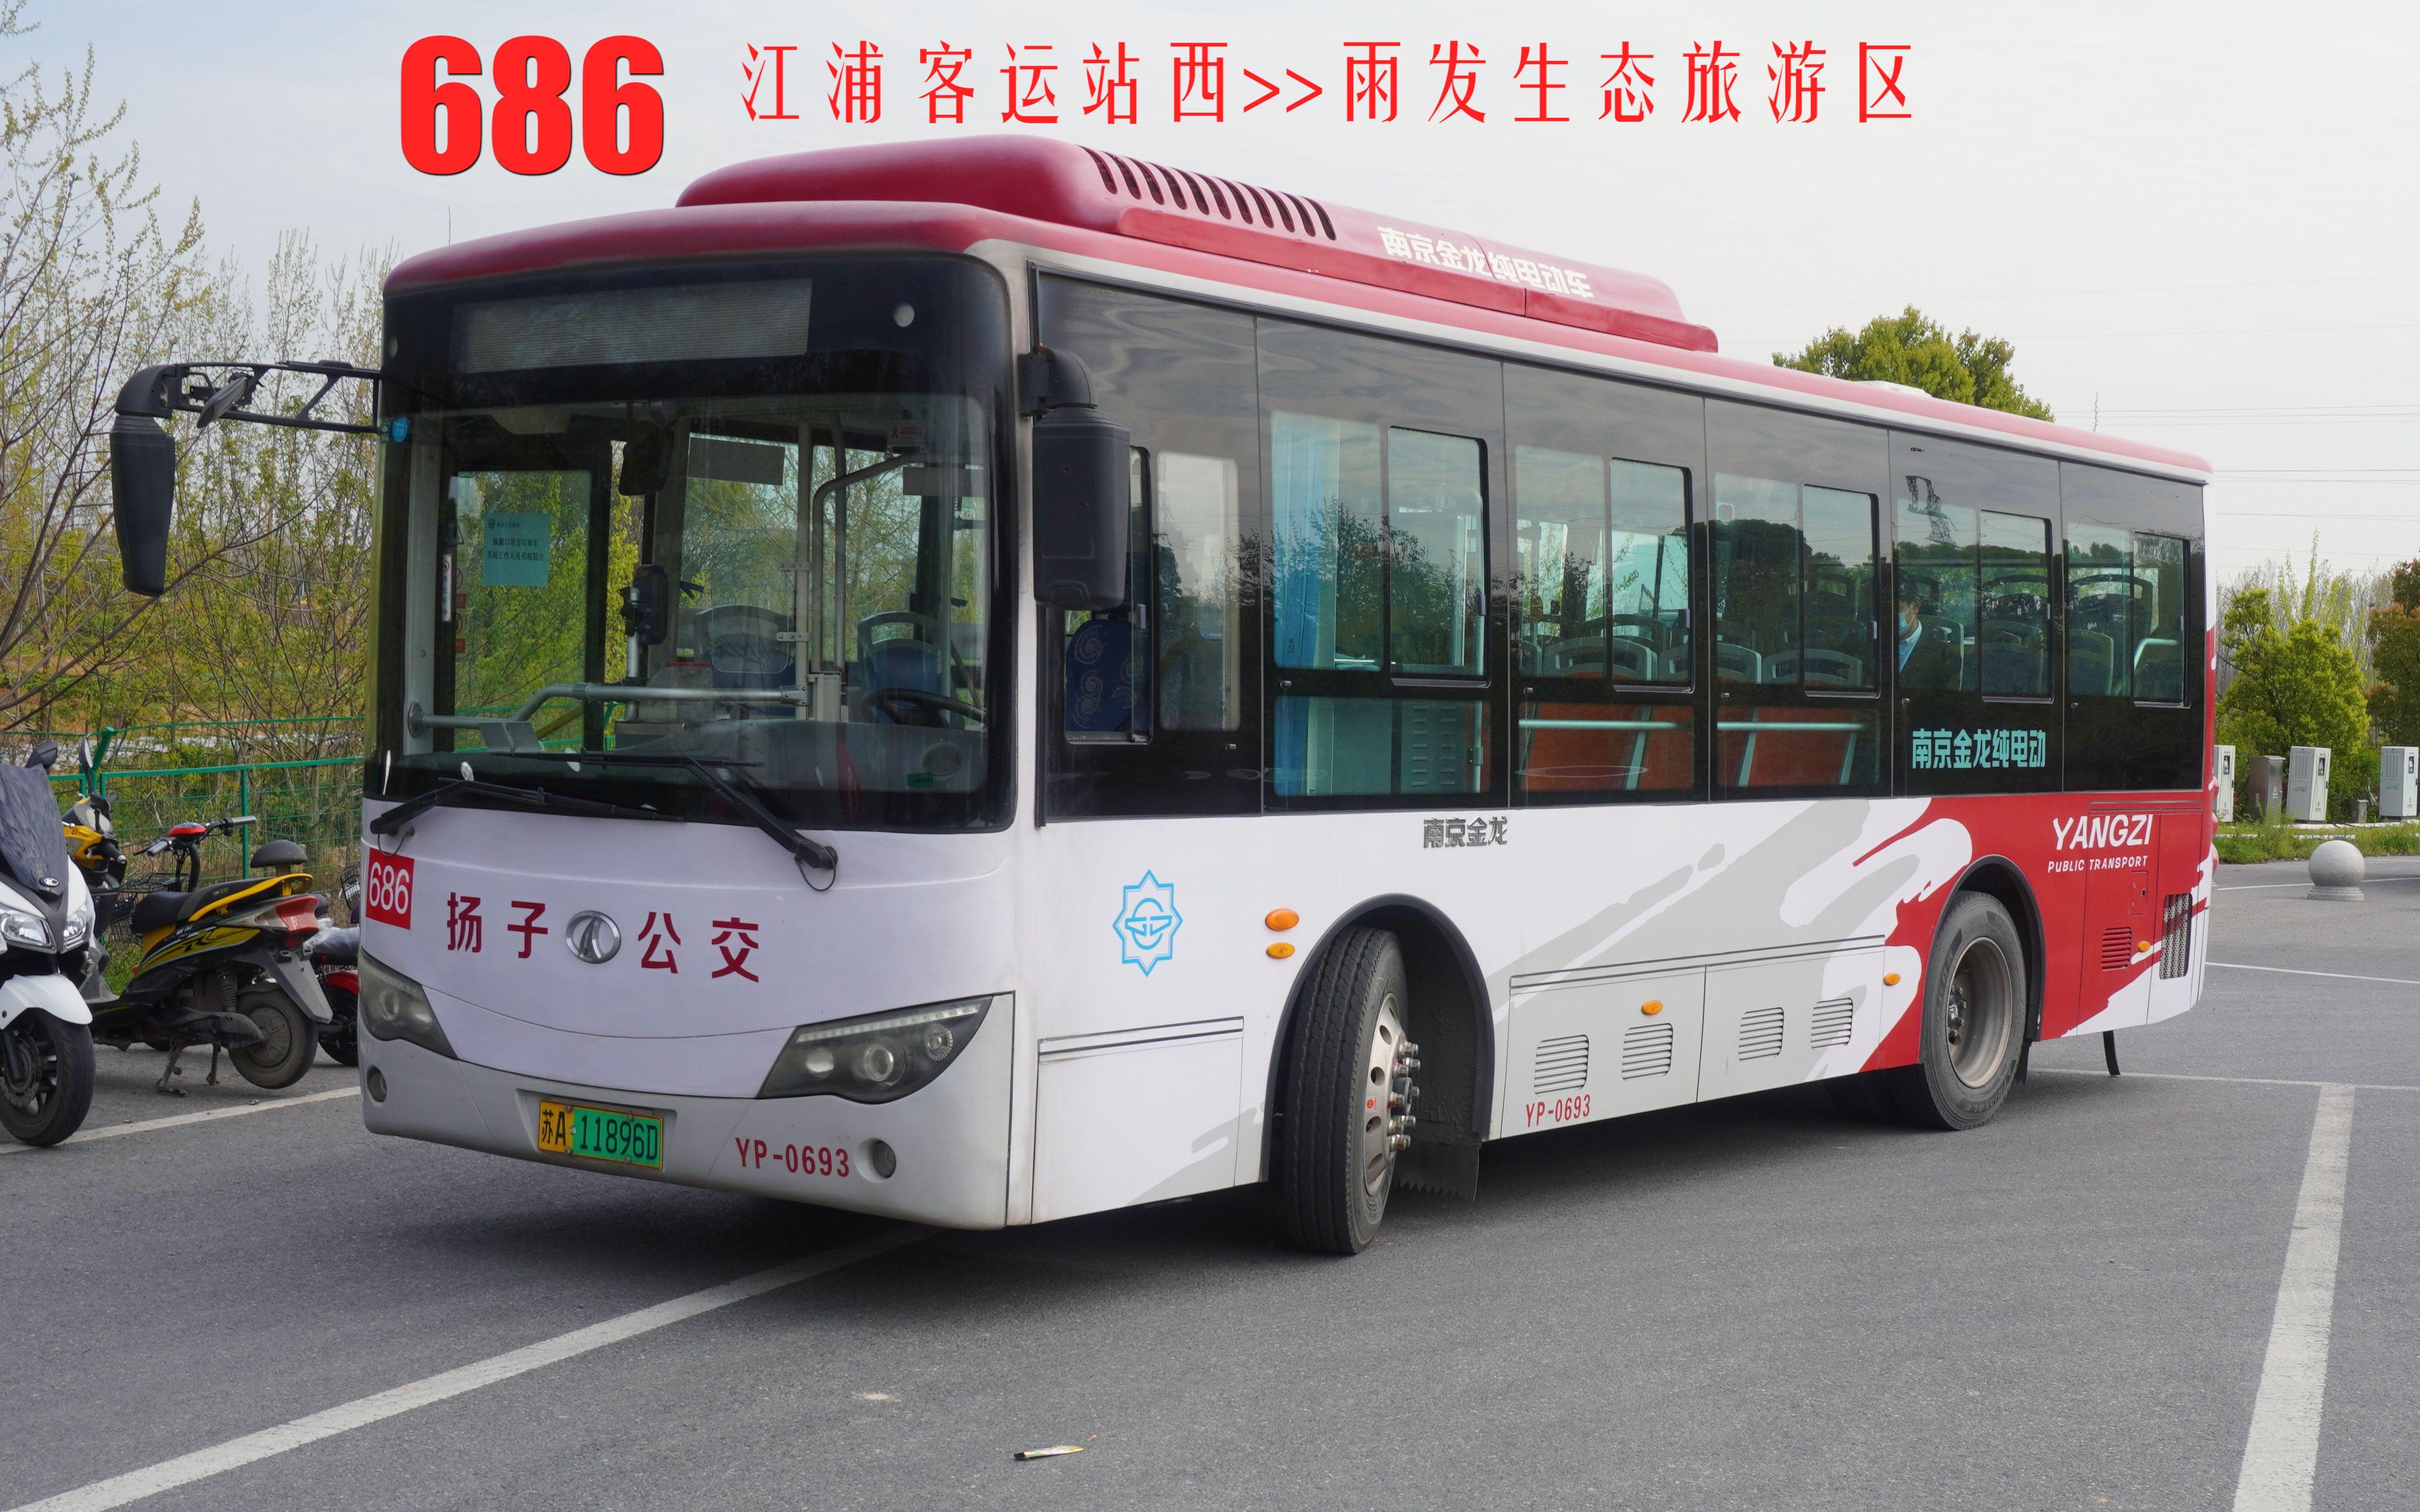 【南京公交pov】南京公交686路(江浦客运站西→雨发生态旅游区)全程